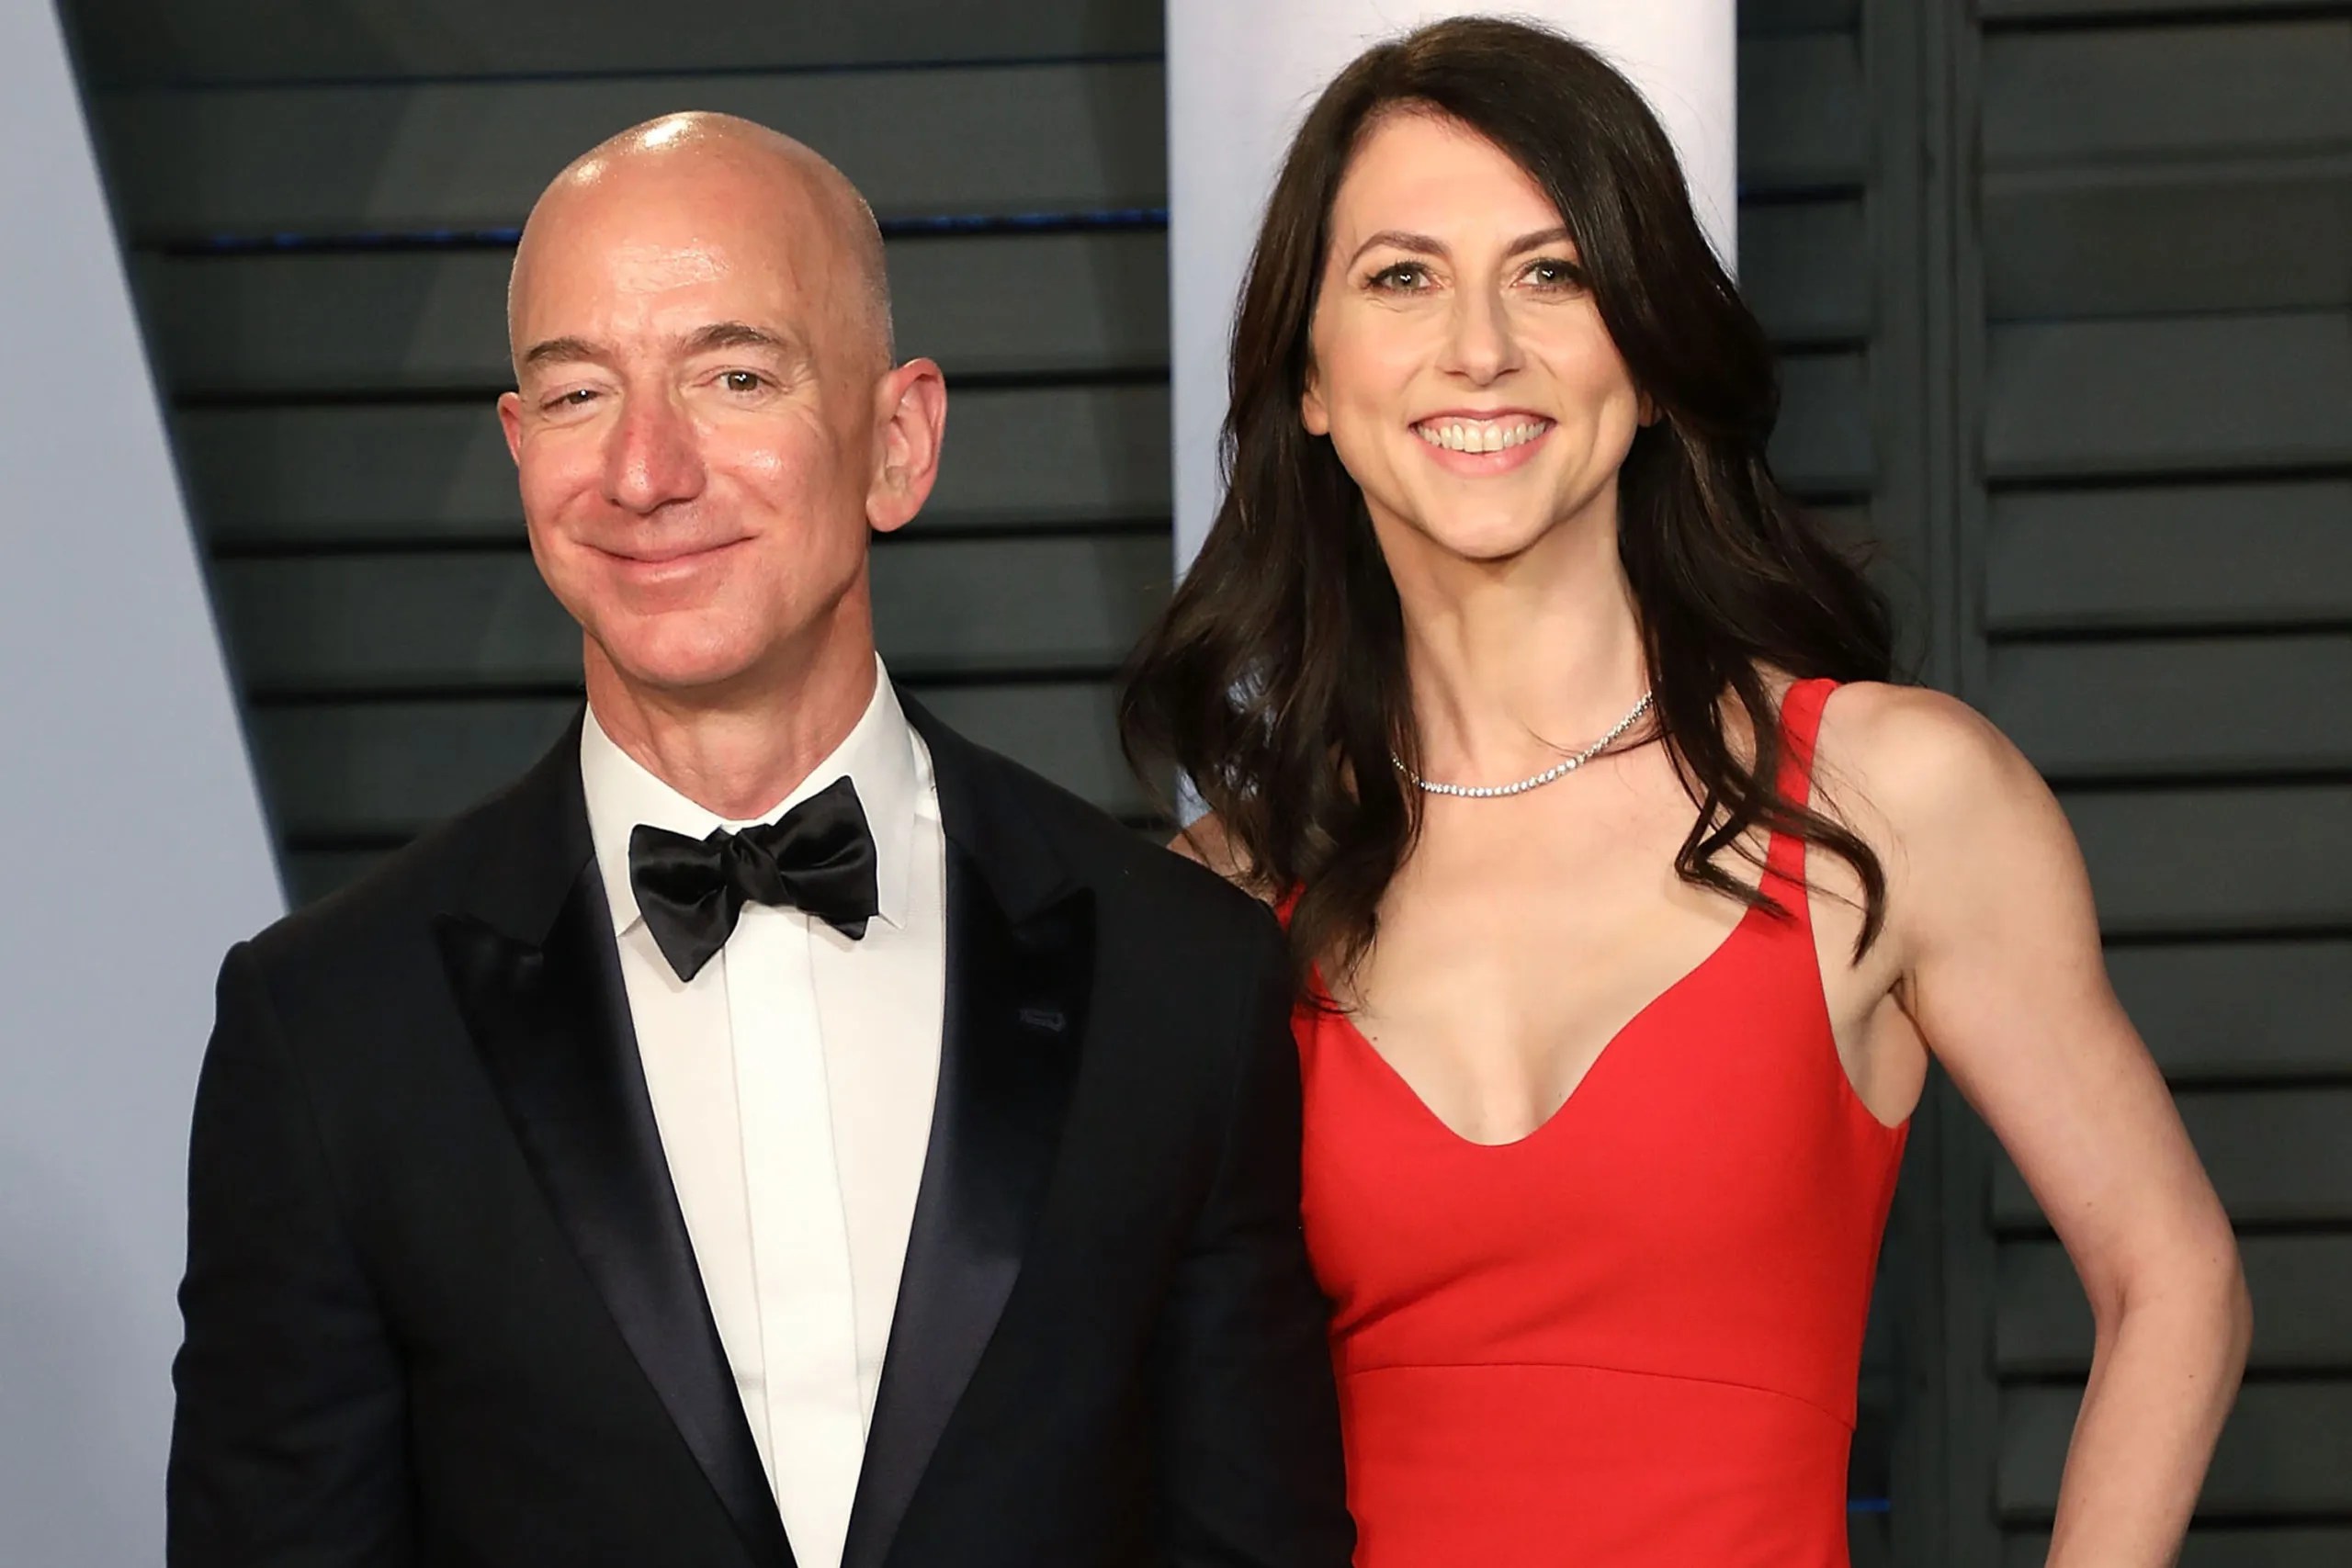 MacKenzie Scott Jeff Bezos' exwife donates 1.7 billion to LGBT groups